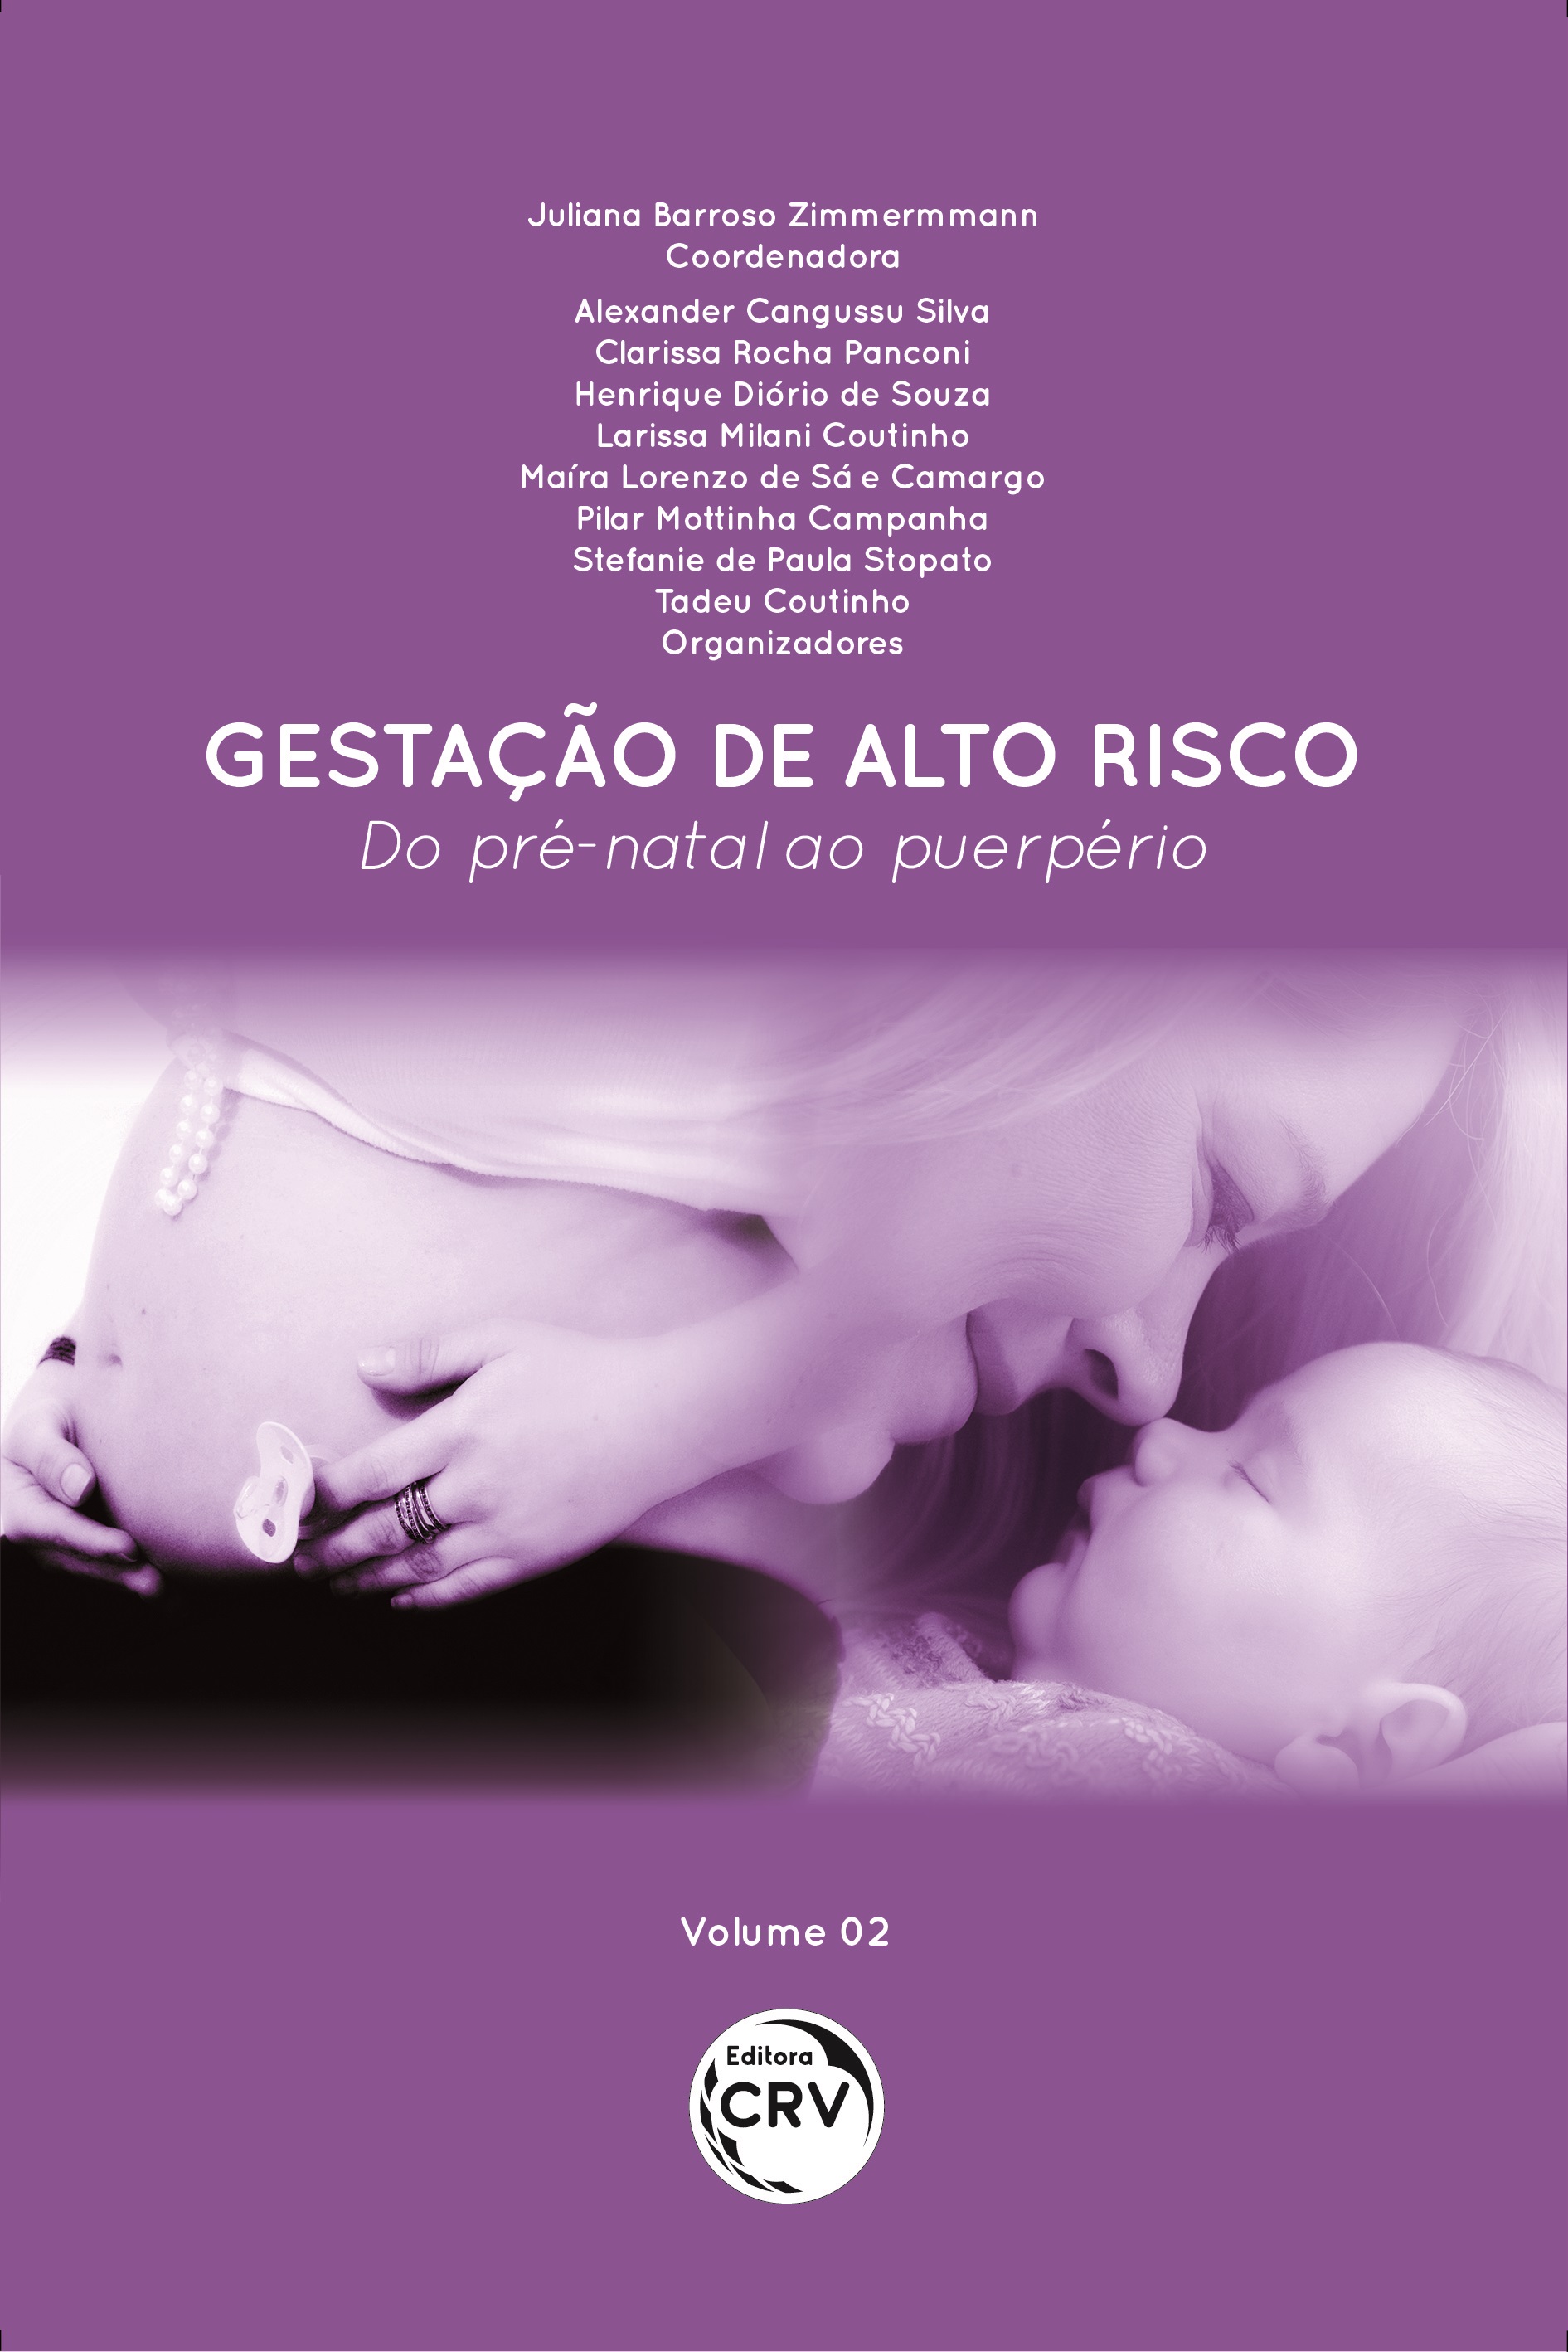 GESTAÇÃO DE ALTO RISCO: <br>Do pré-natal ao puerpério Volume 02